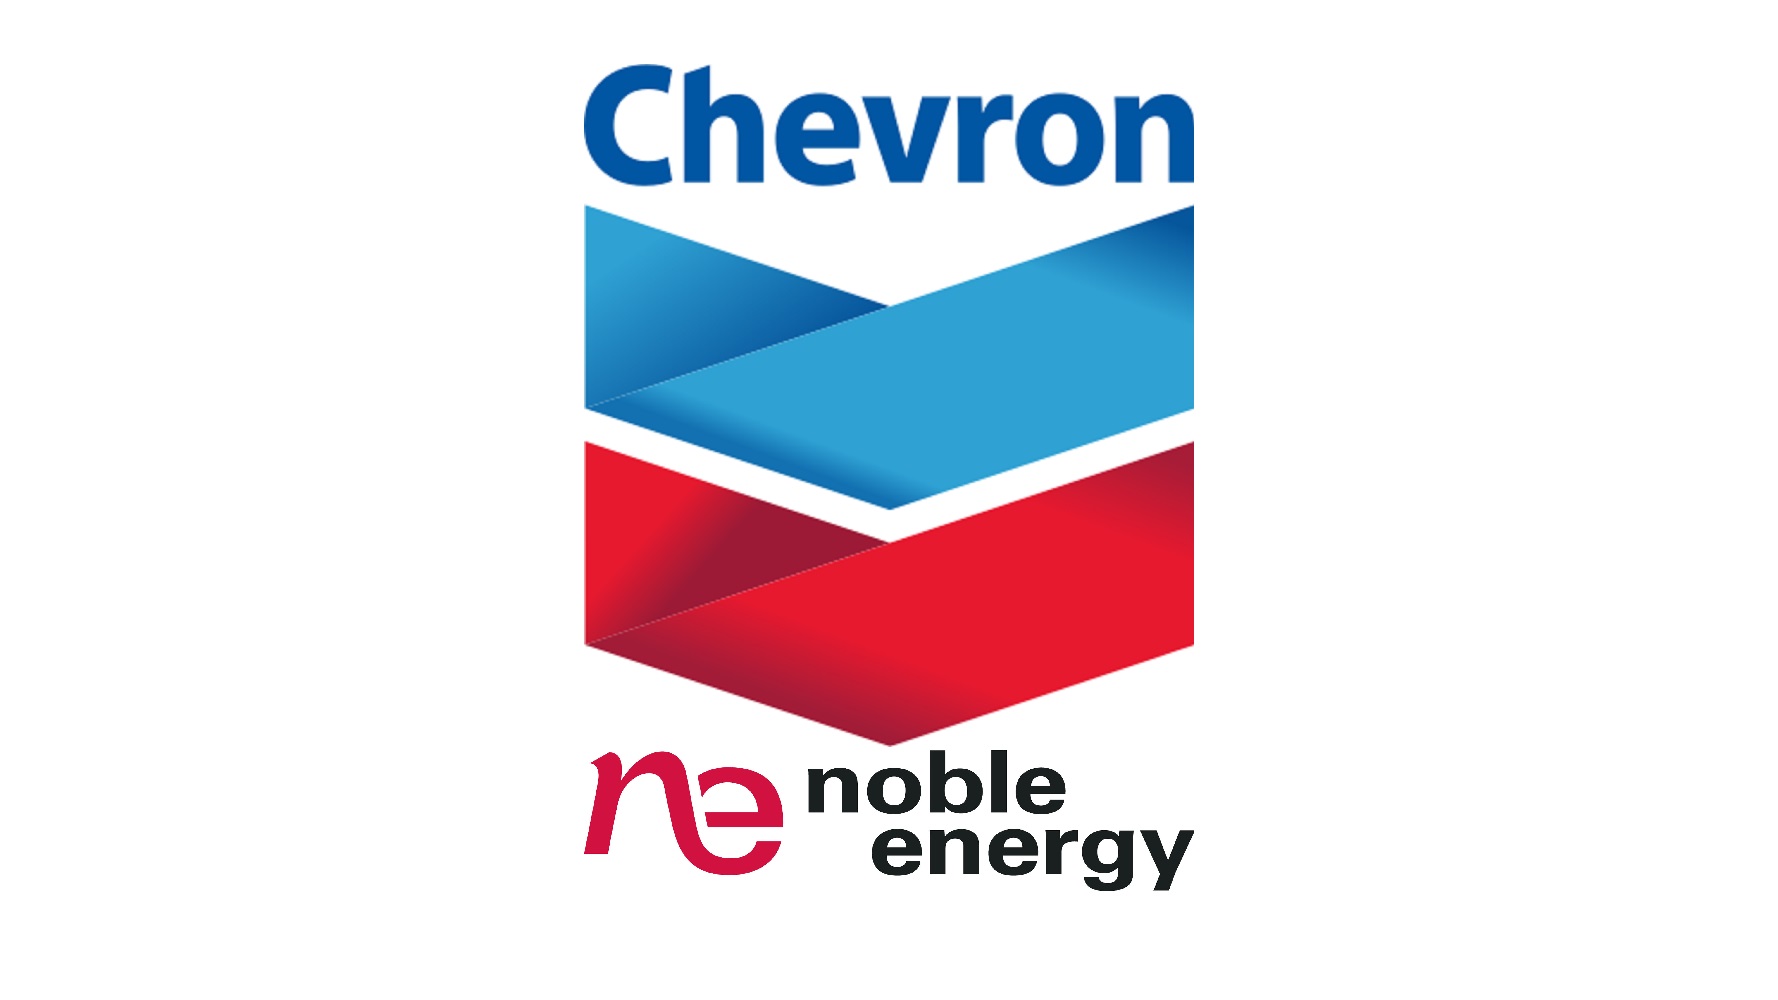 Chevron Announces Plan to Purchase Noble Energy